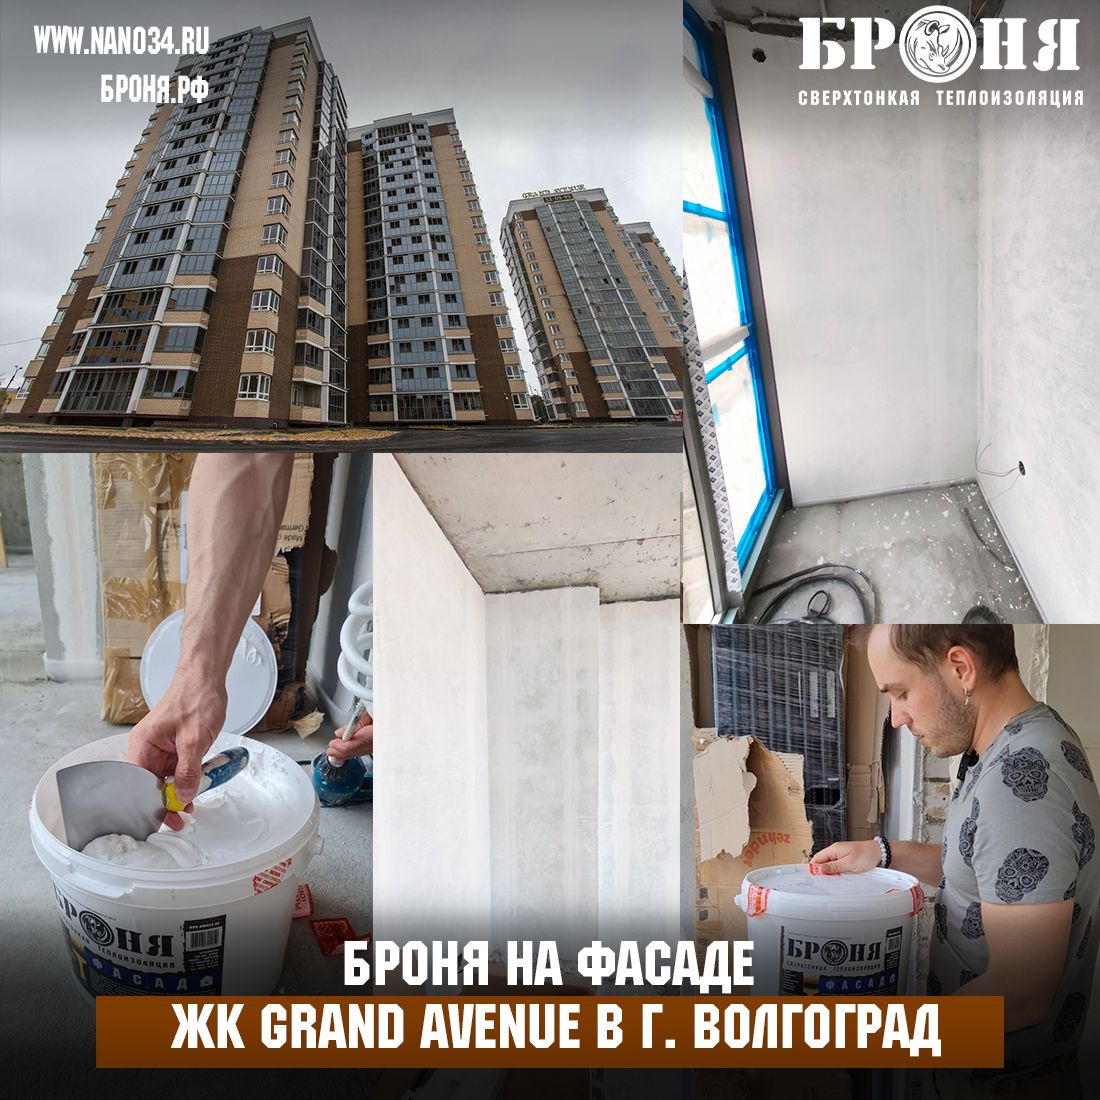 Применение Броня Фасад на балконе современного архитектурно смелого ЖК Grand Avenue в г. Волгоград (Фото, видео)